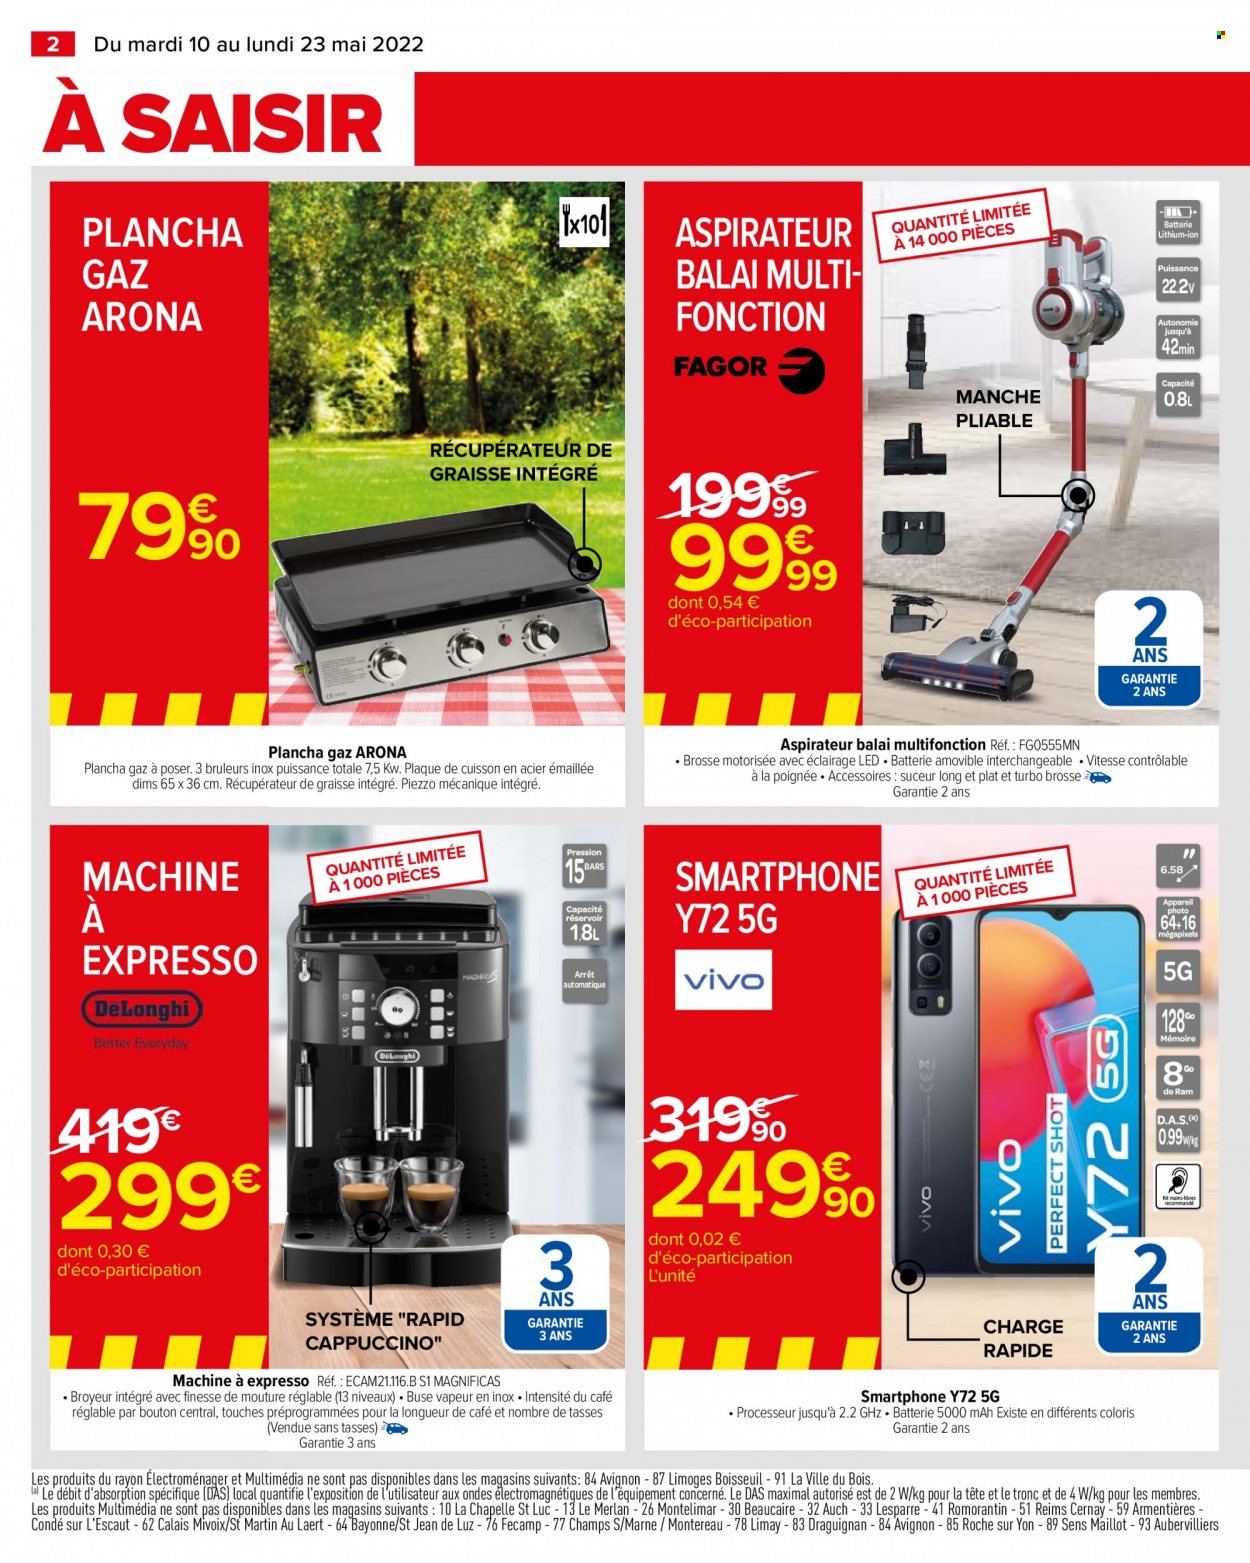 thumbnail - Catalogue Carrefour Hypermarchés - 10/05/2022 - 23/05/2022 - Produits soldés - Expresso, smartphone, machine à café, aspirateur, aspirateur balai, plancha. Page 4.